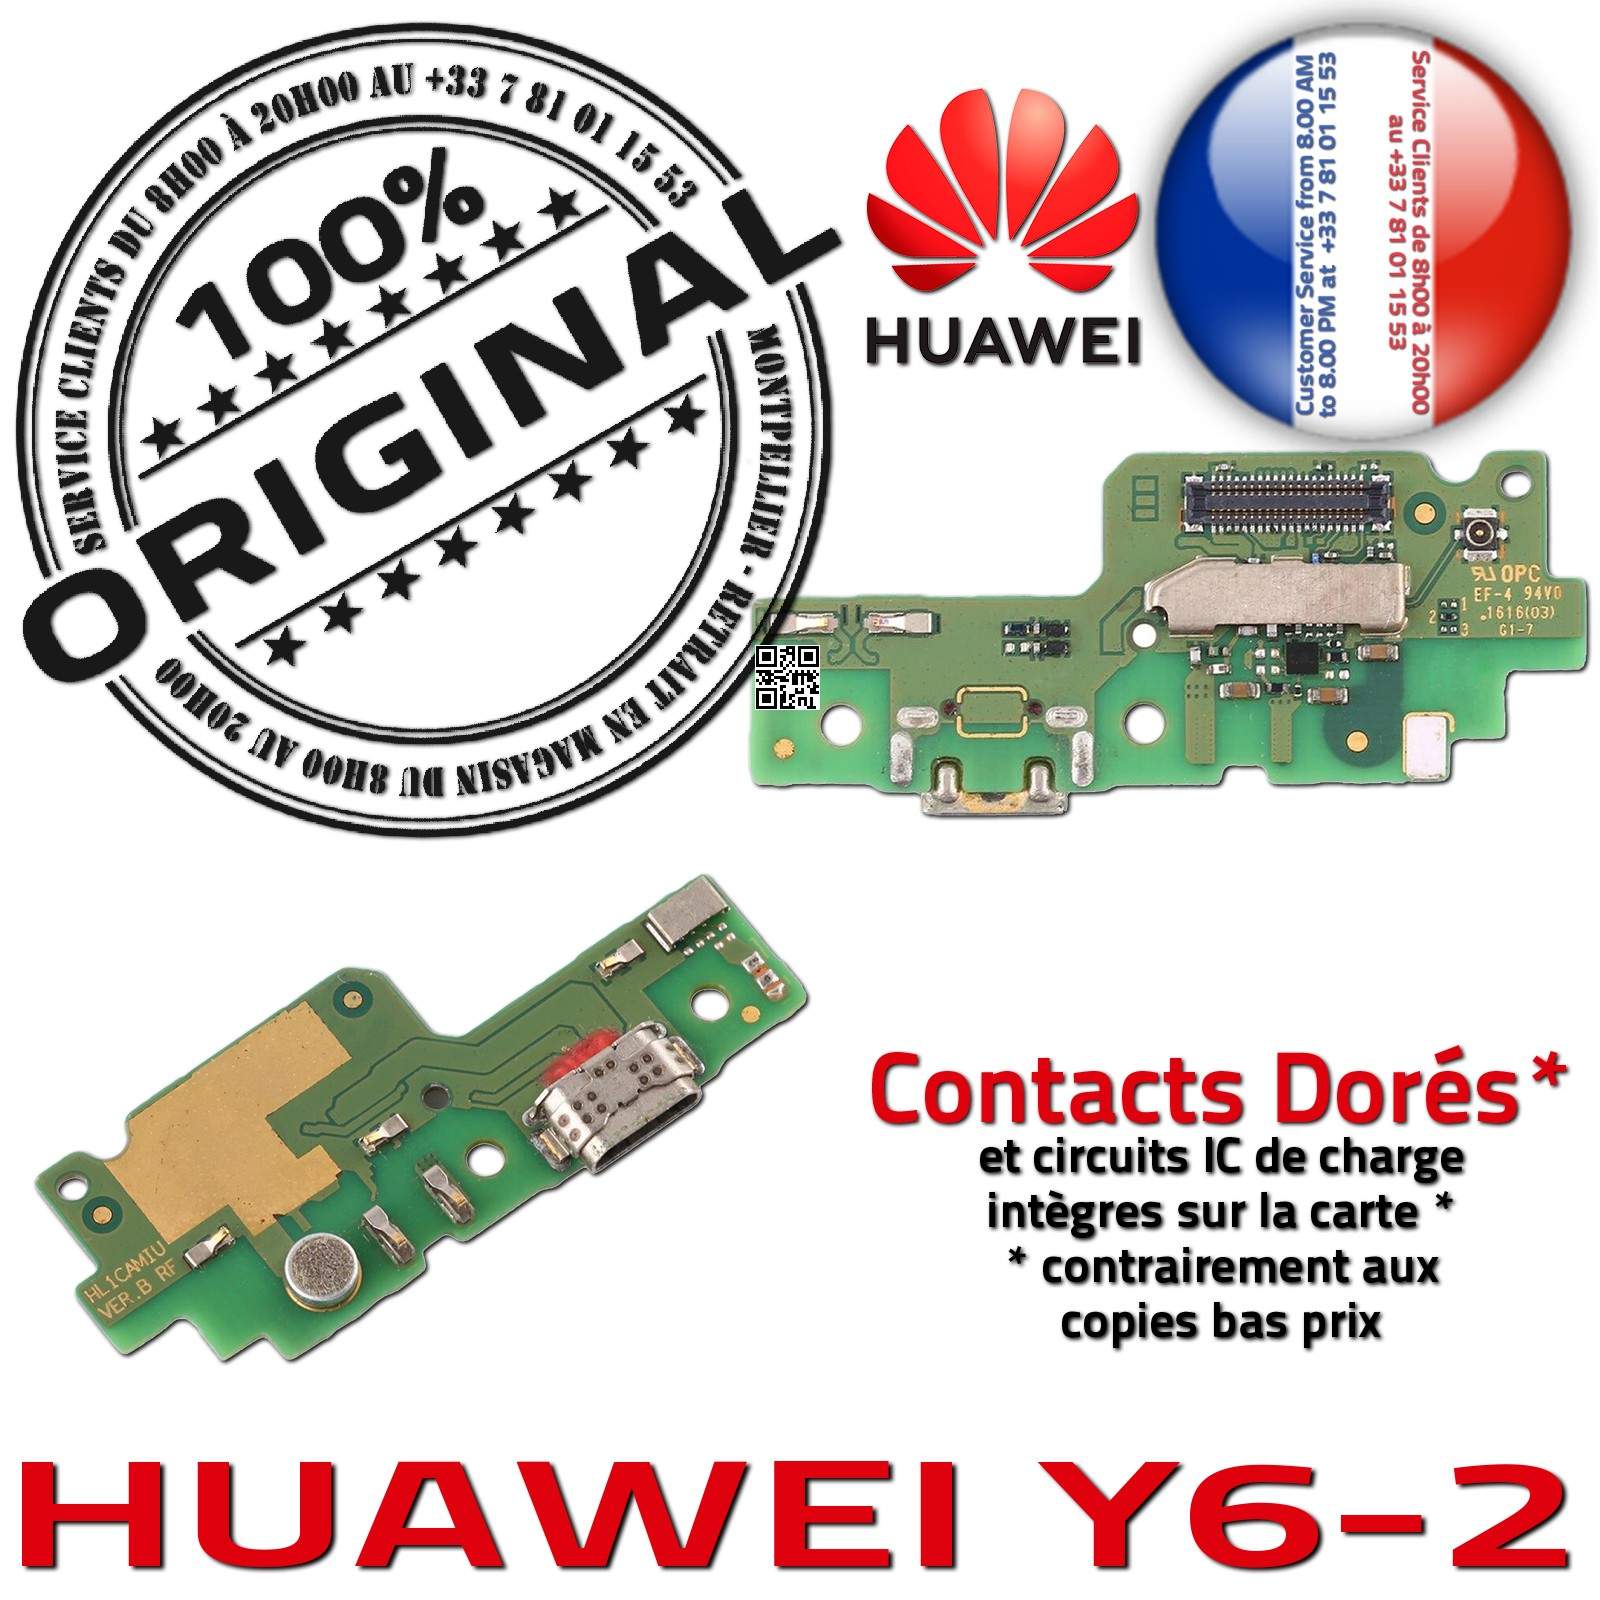 Huawei Y6-2 ORIGINAL Connecteur Antenne SMA GSM Charge Prise Chargeur Téléphone PORT USB Nappe OFFICIELLE Microphone Qualité